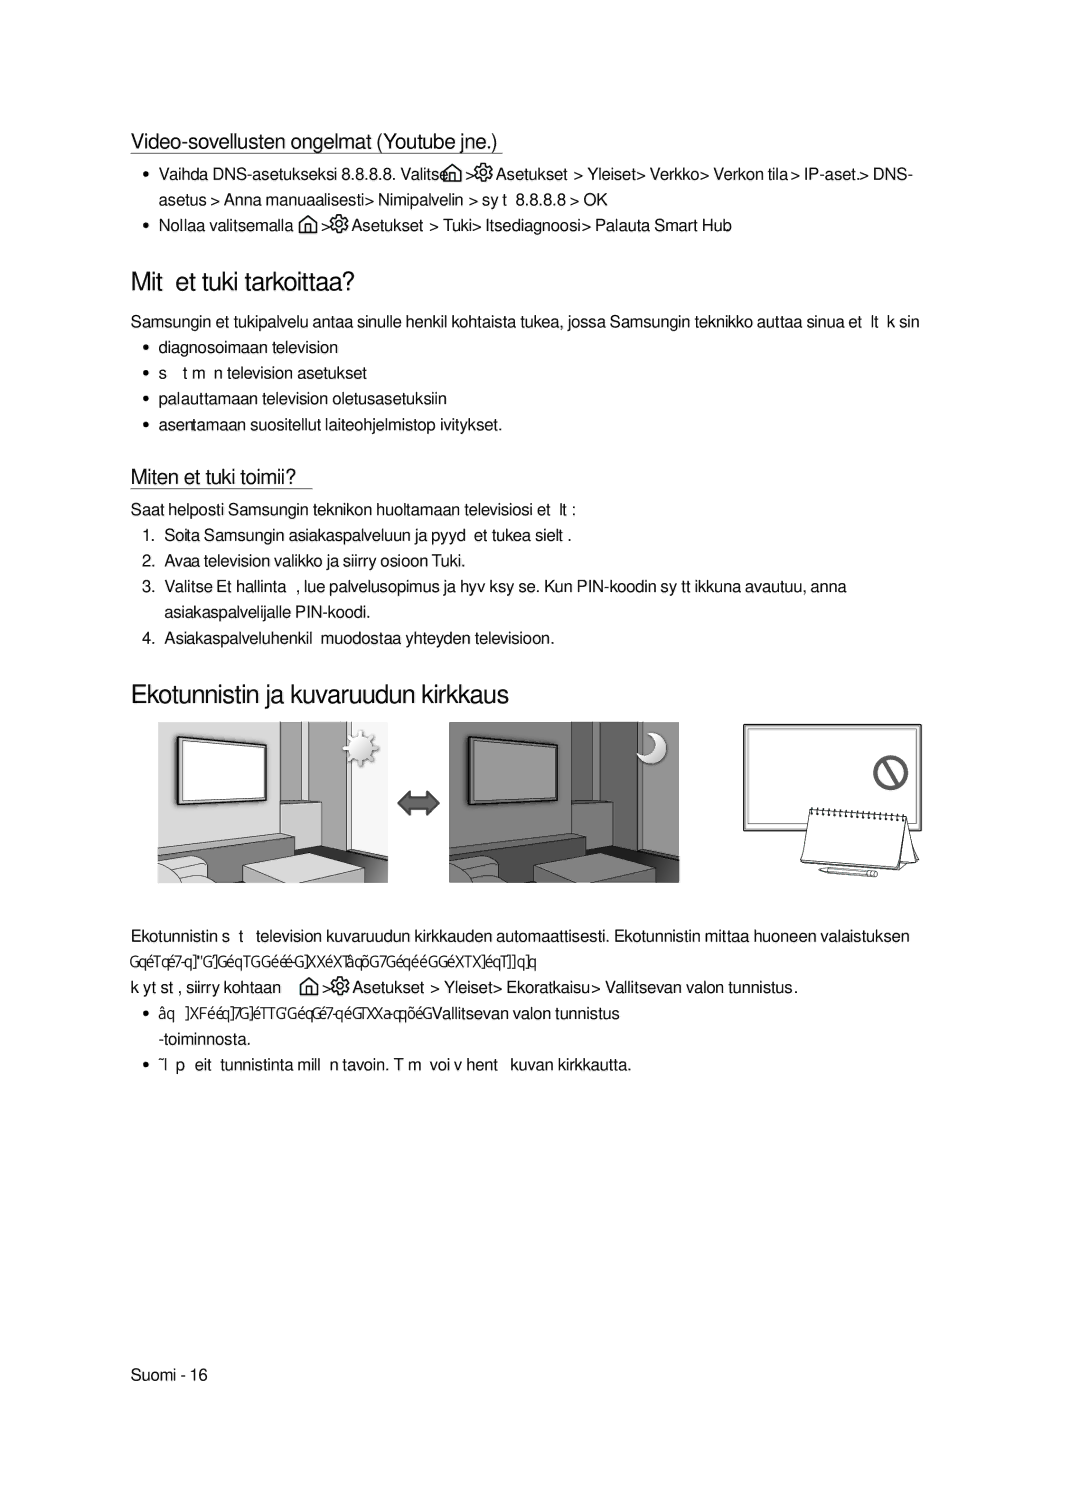 Samsung UE49MU6225KXXC manual Mitä etätuki tarkoittaa?, Ekotunnistin ja kuvaruudun kirkkaus, Miten etätuki toimii? 